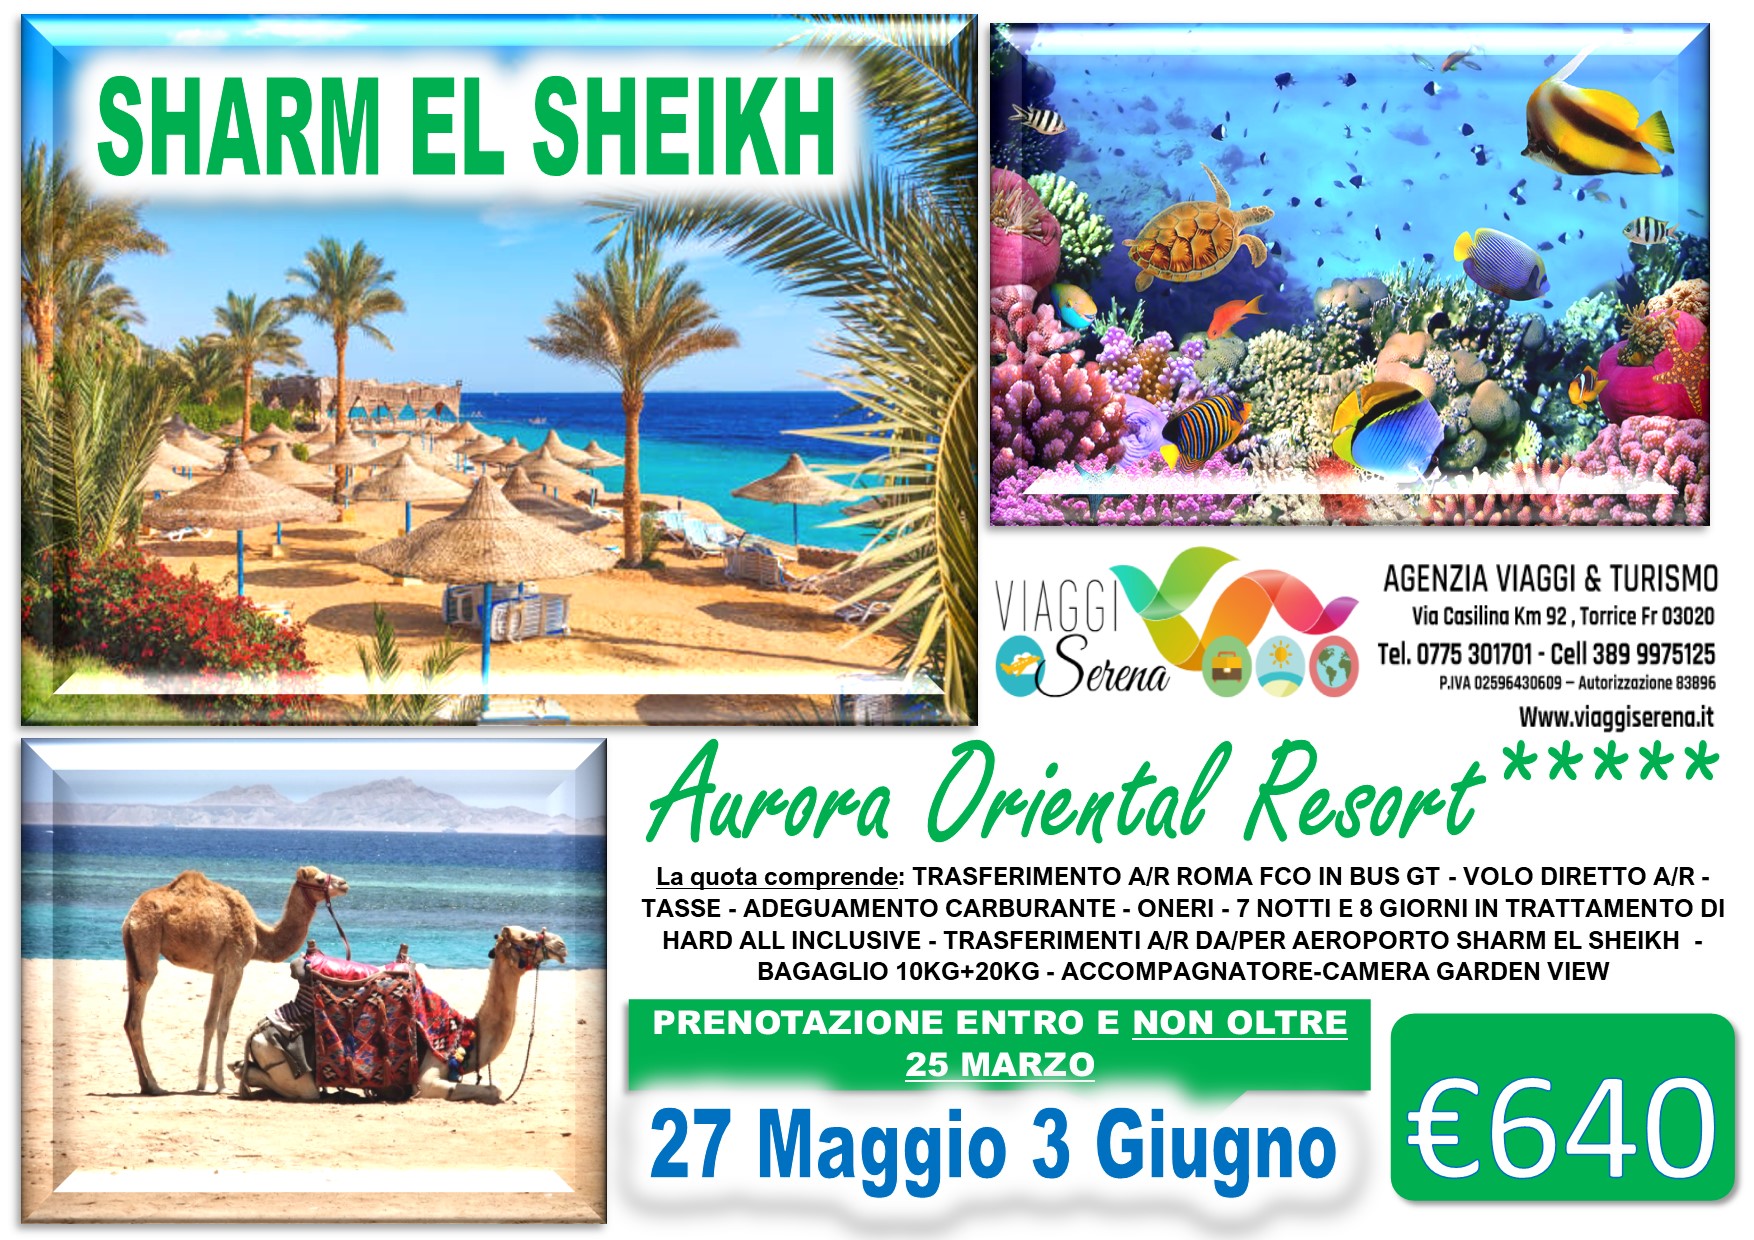 Viaggi di Gruppo: SHARM EL SHEIKH Aurora Oriental Resort 27 Maggio 3 Giugno € 640,00